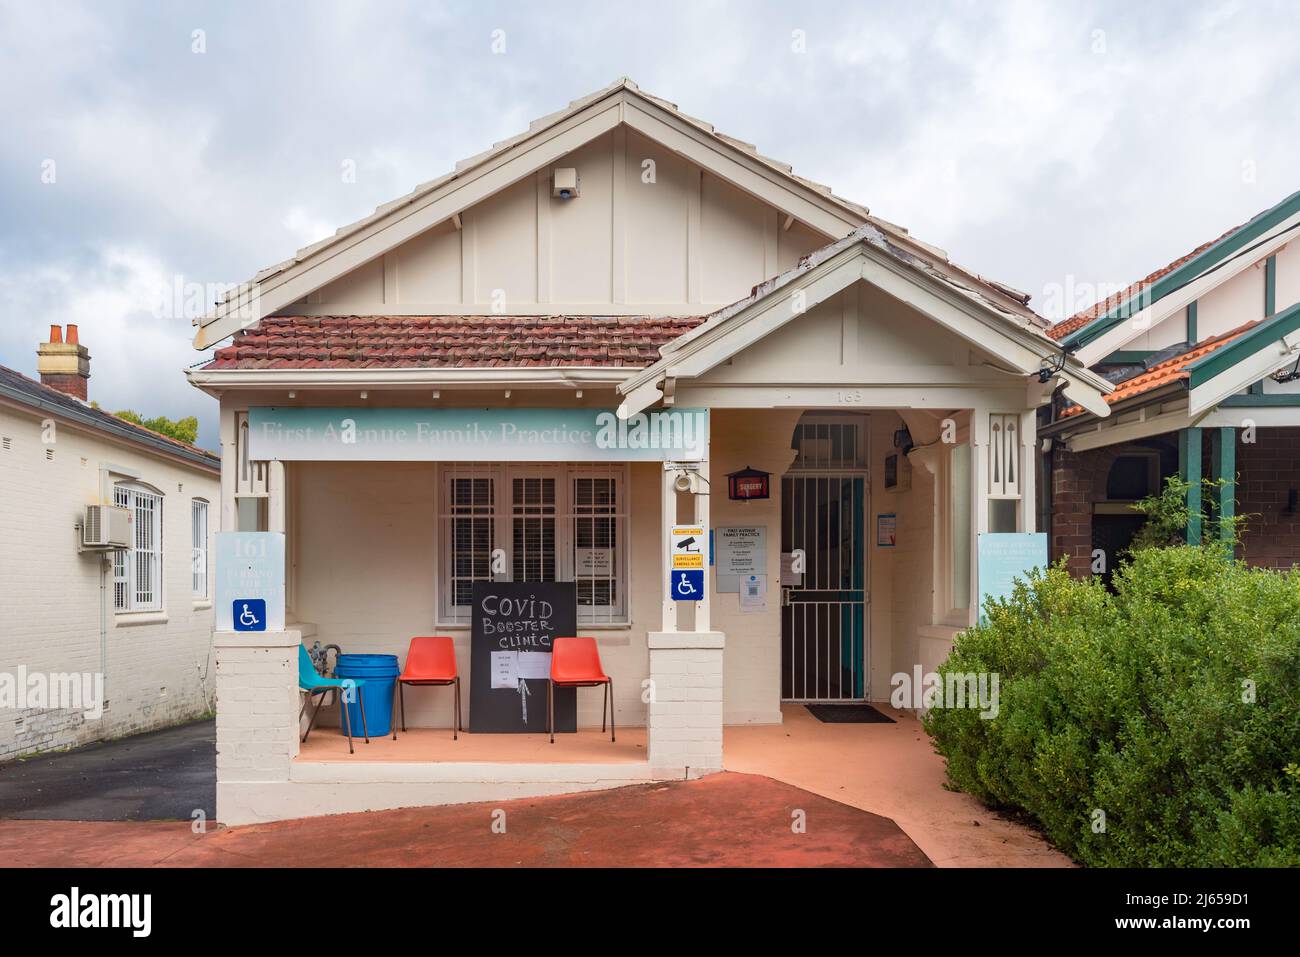 Une petite maison transformée en chirurgie générale locale à Five Dock, Sydney, avec un panneau de surveillance à l'avant offrant des tirs de rappel Covid-19 Banque D'Images